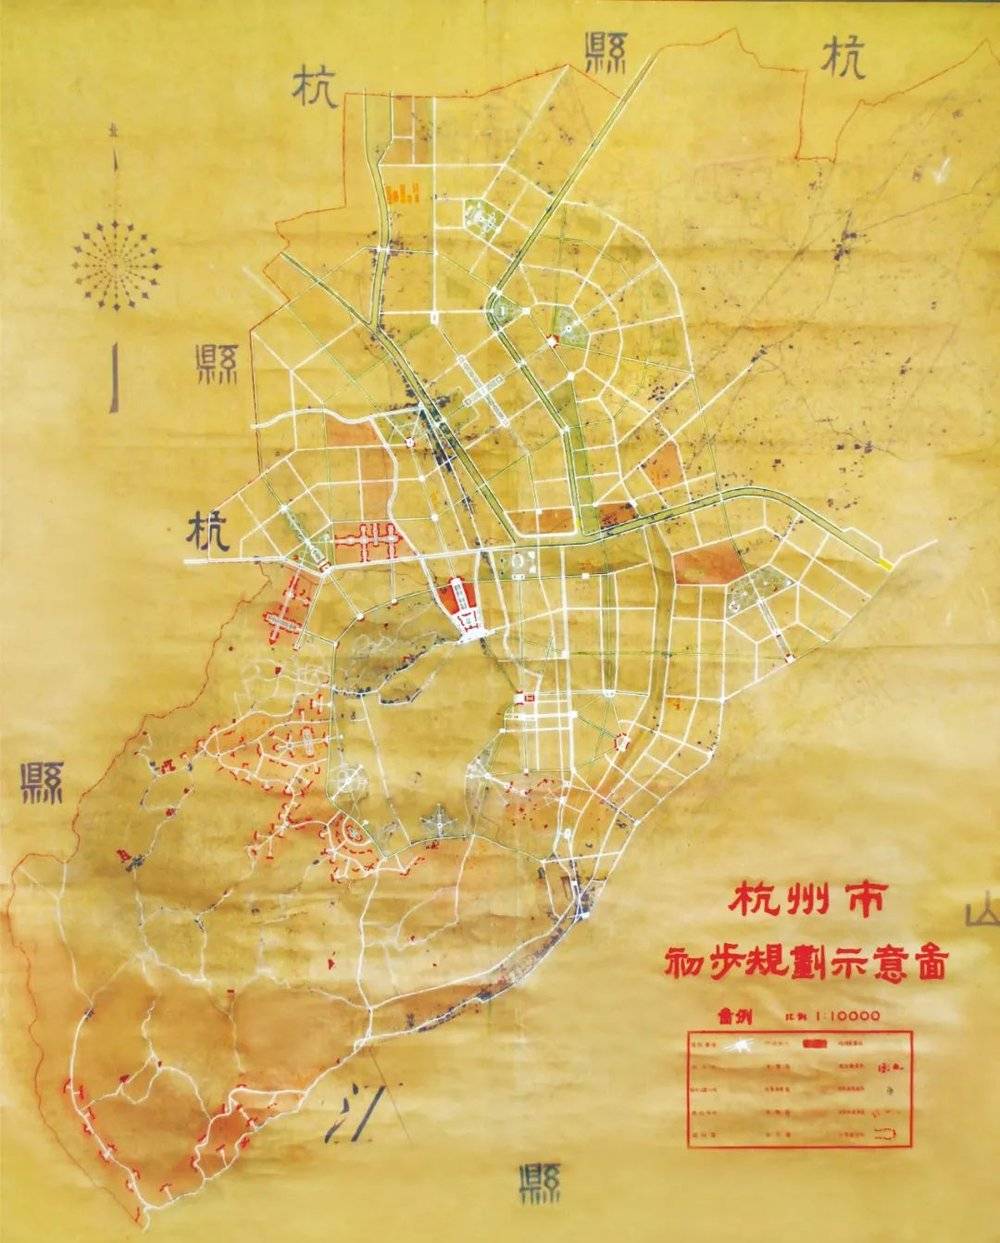 ▲1953年时的杭州市初步规划示意图，从城市布局上，采用核心中轴放射或环形放射方式，城市公共空间以集中的大绿地广场为特色。